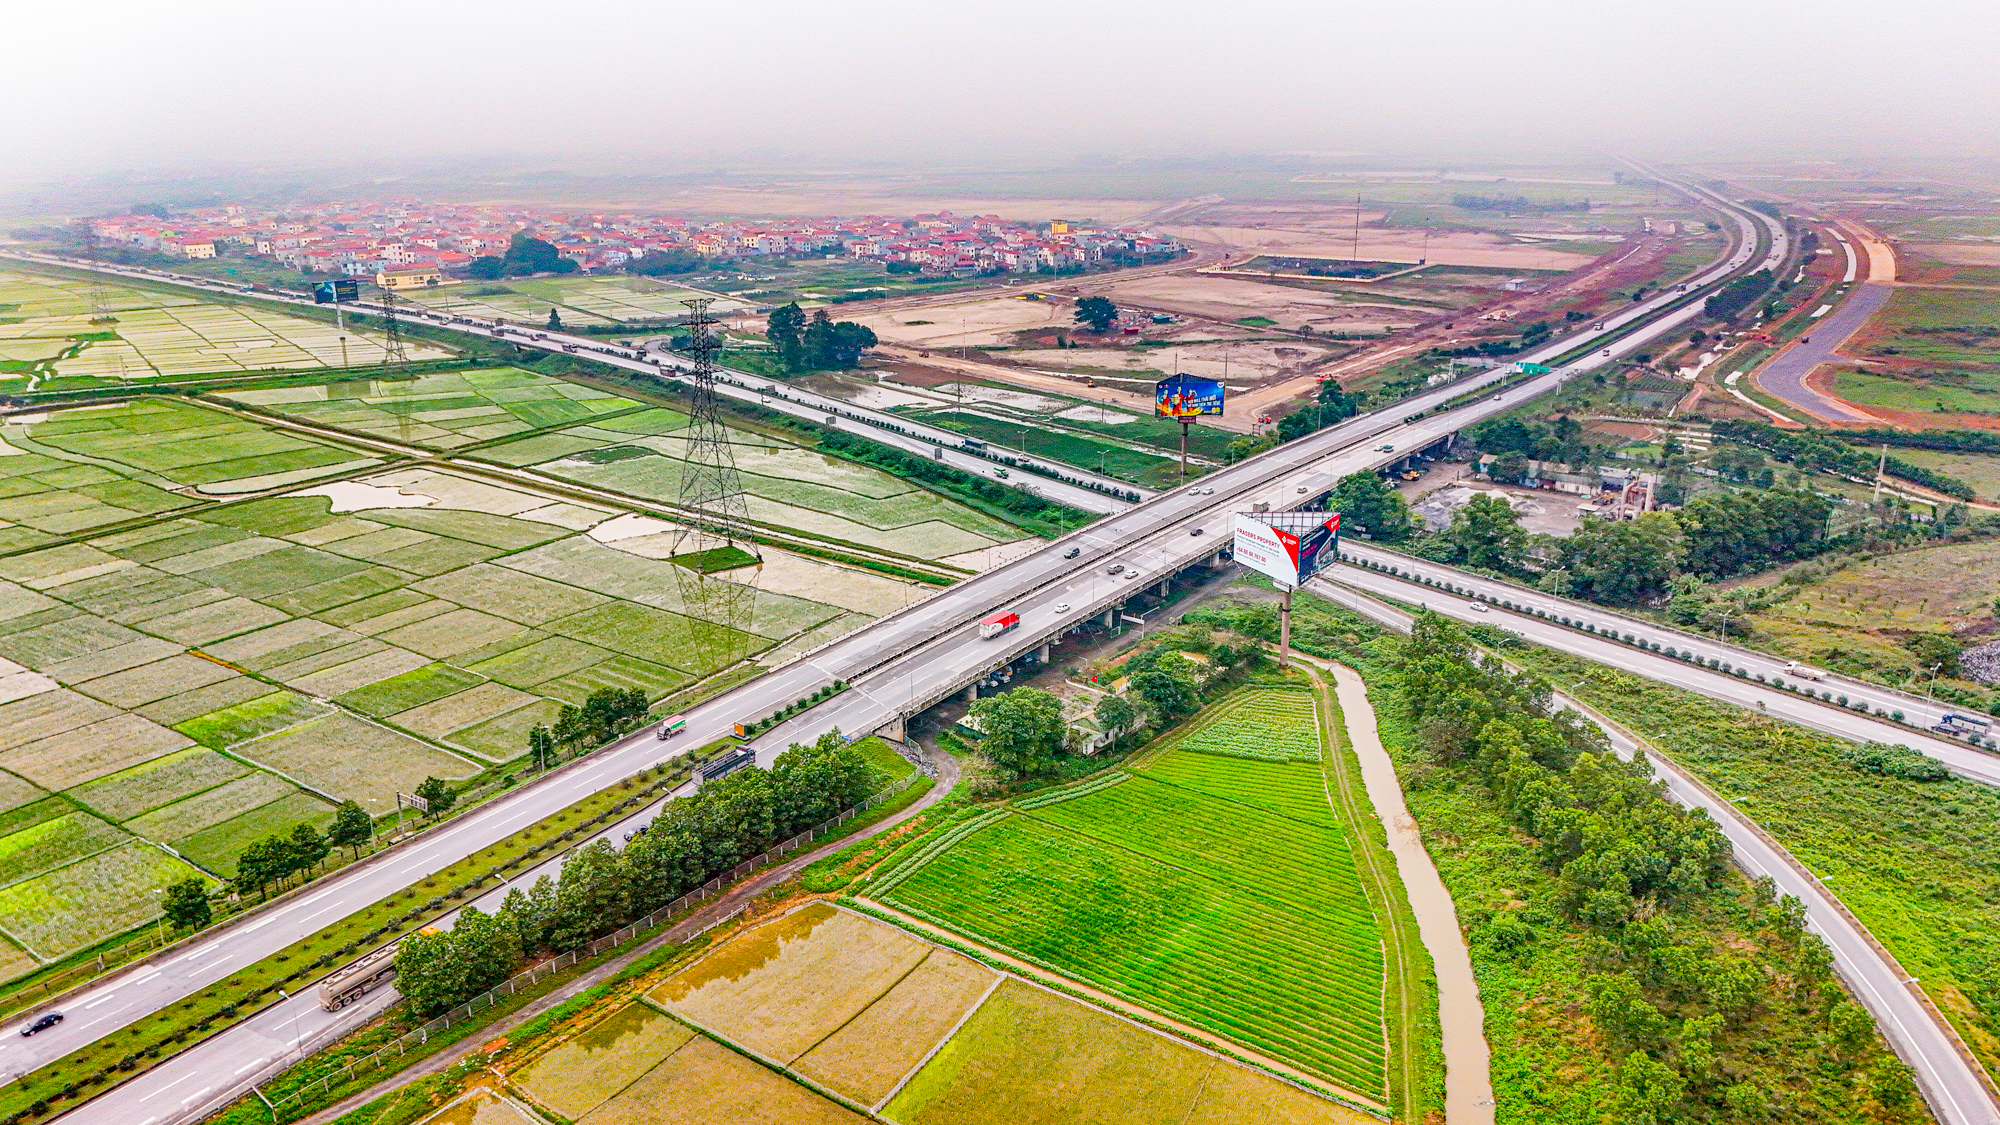 Cao tốc từng dài nhất Việt Nam, tổng mức đầu tư 10.000 tỷ nhưng không thu phí- Ảnh 11.